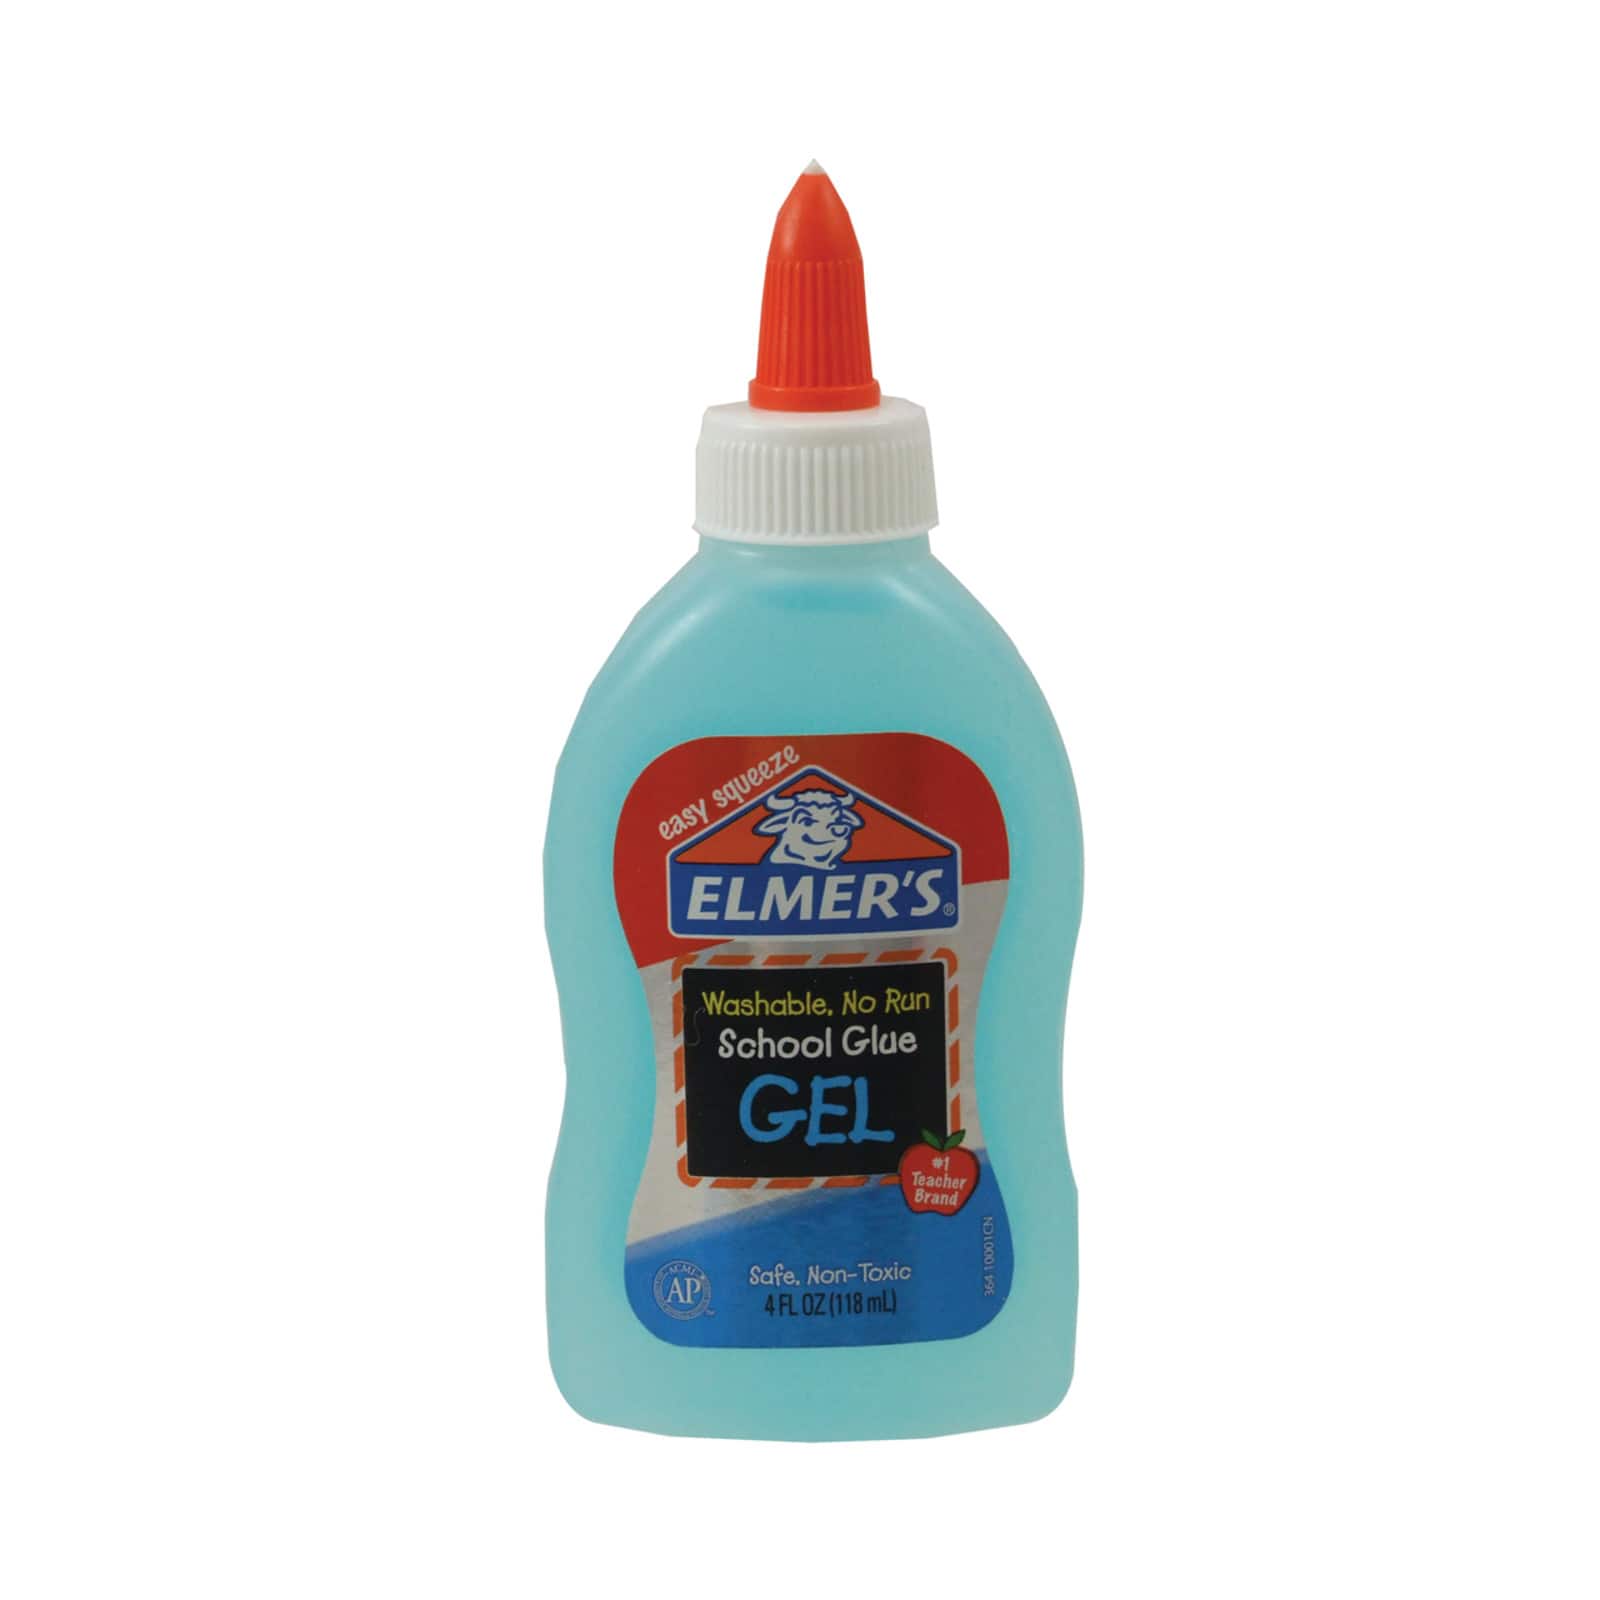 Elmer's® Washable School Glue Gel, 4oz.